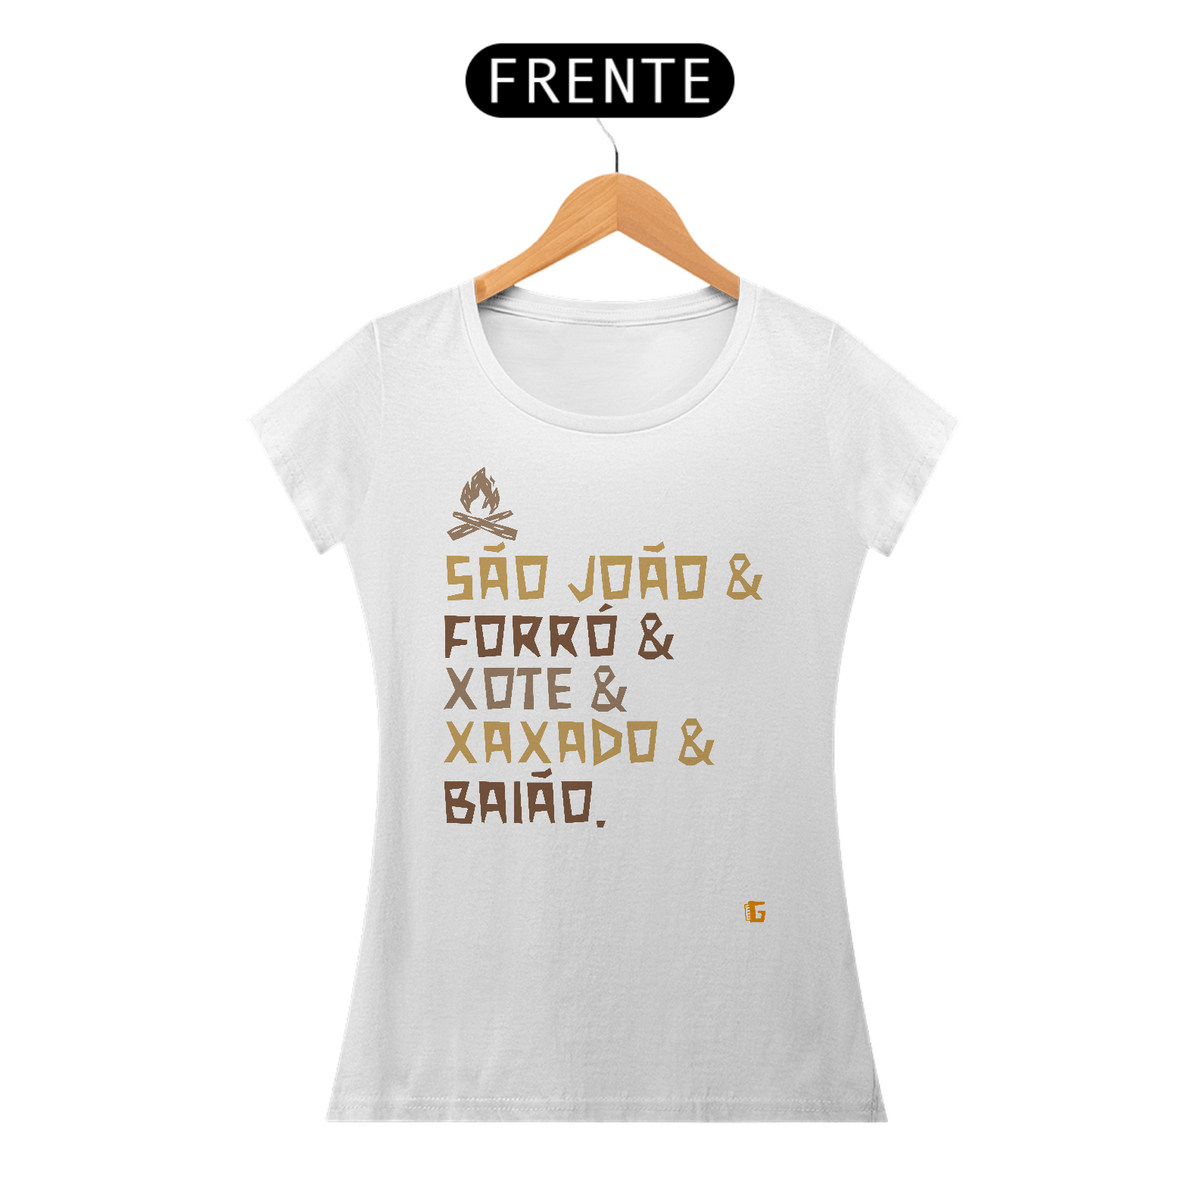 Nome do produto: Camisa Feminina São João & Forró - Texto Original